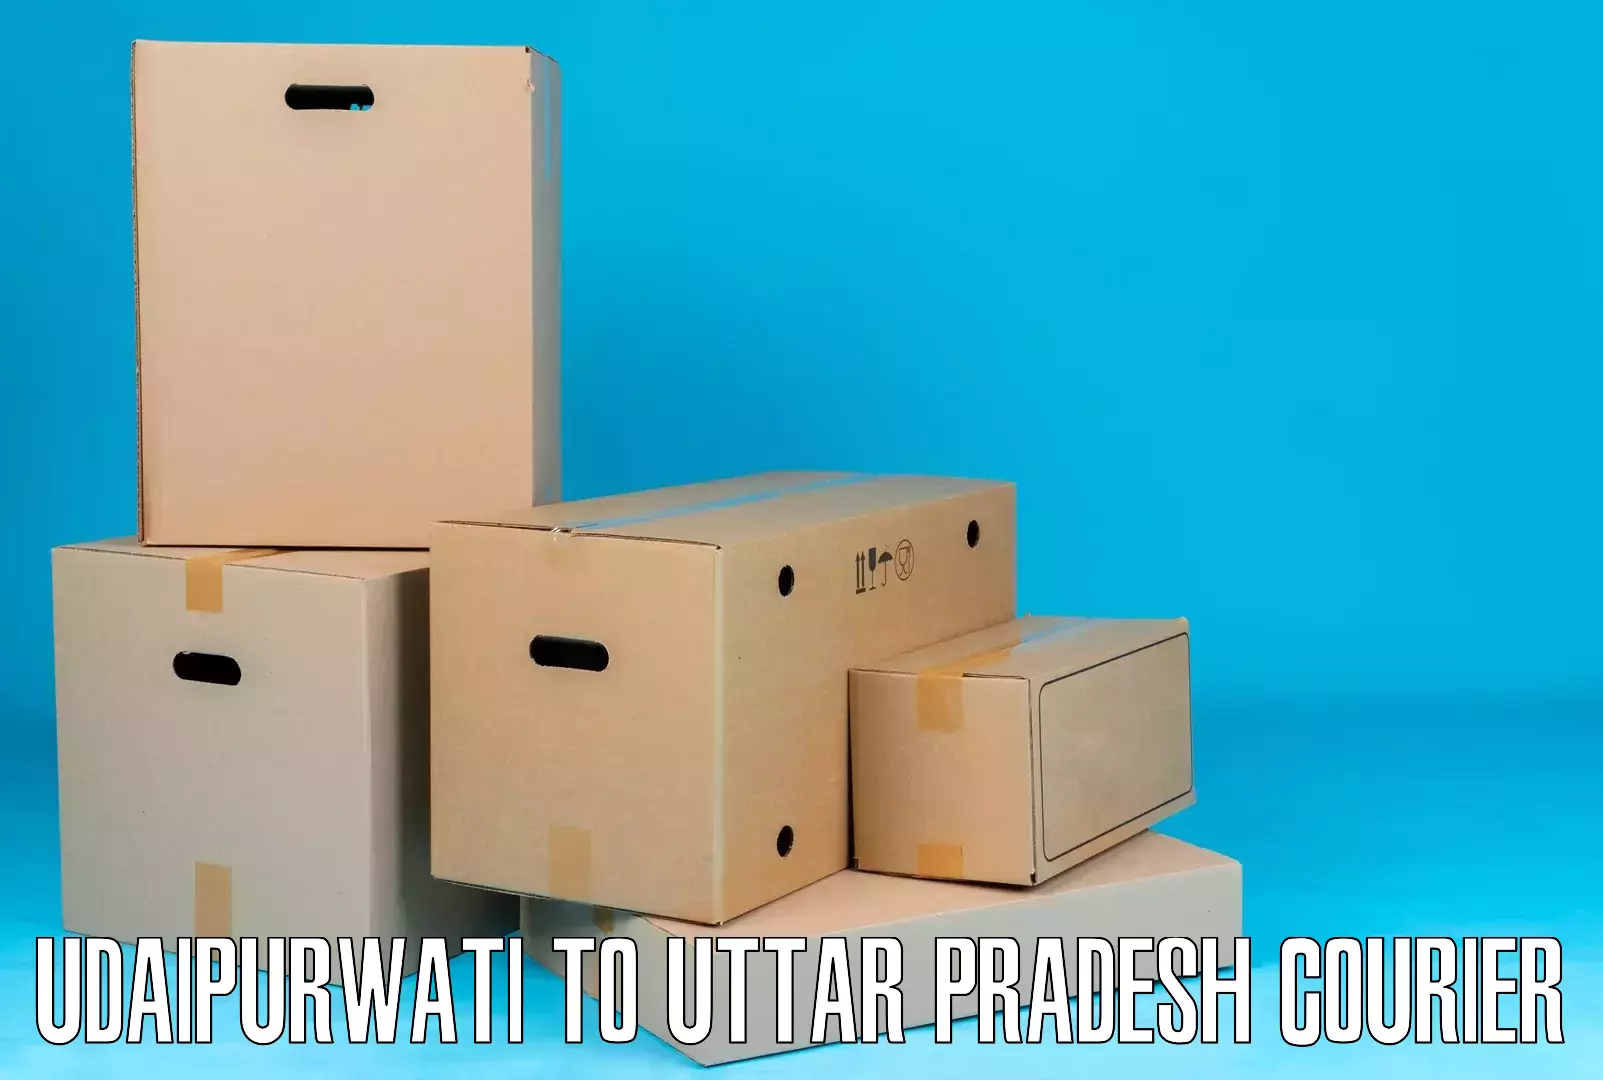 Secure packaging in Udaipurwati to Dhanghata